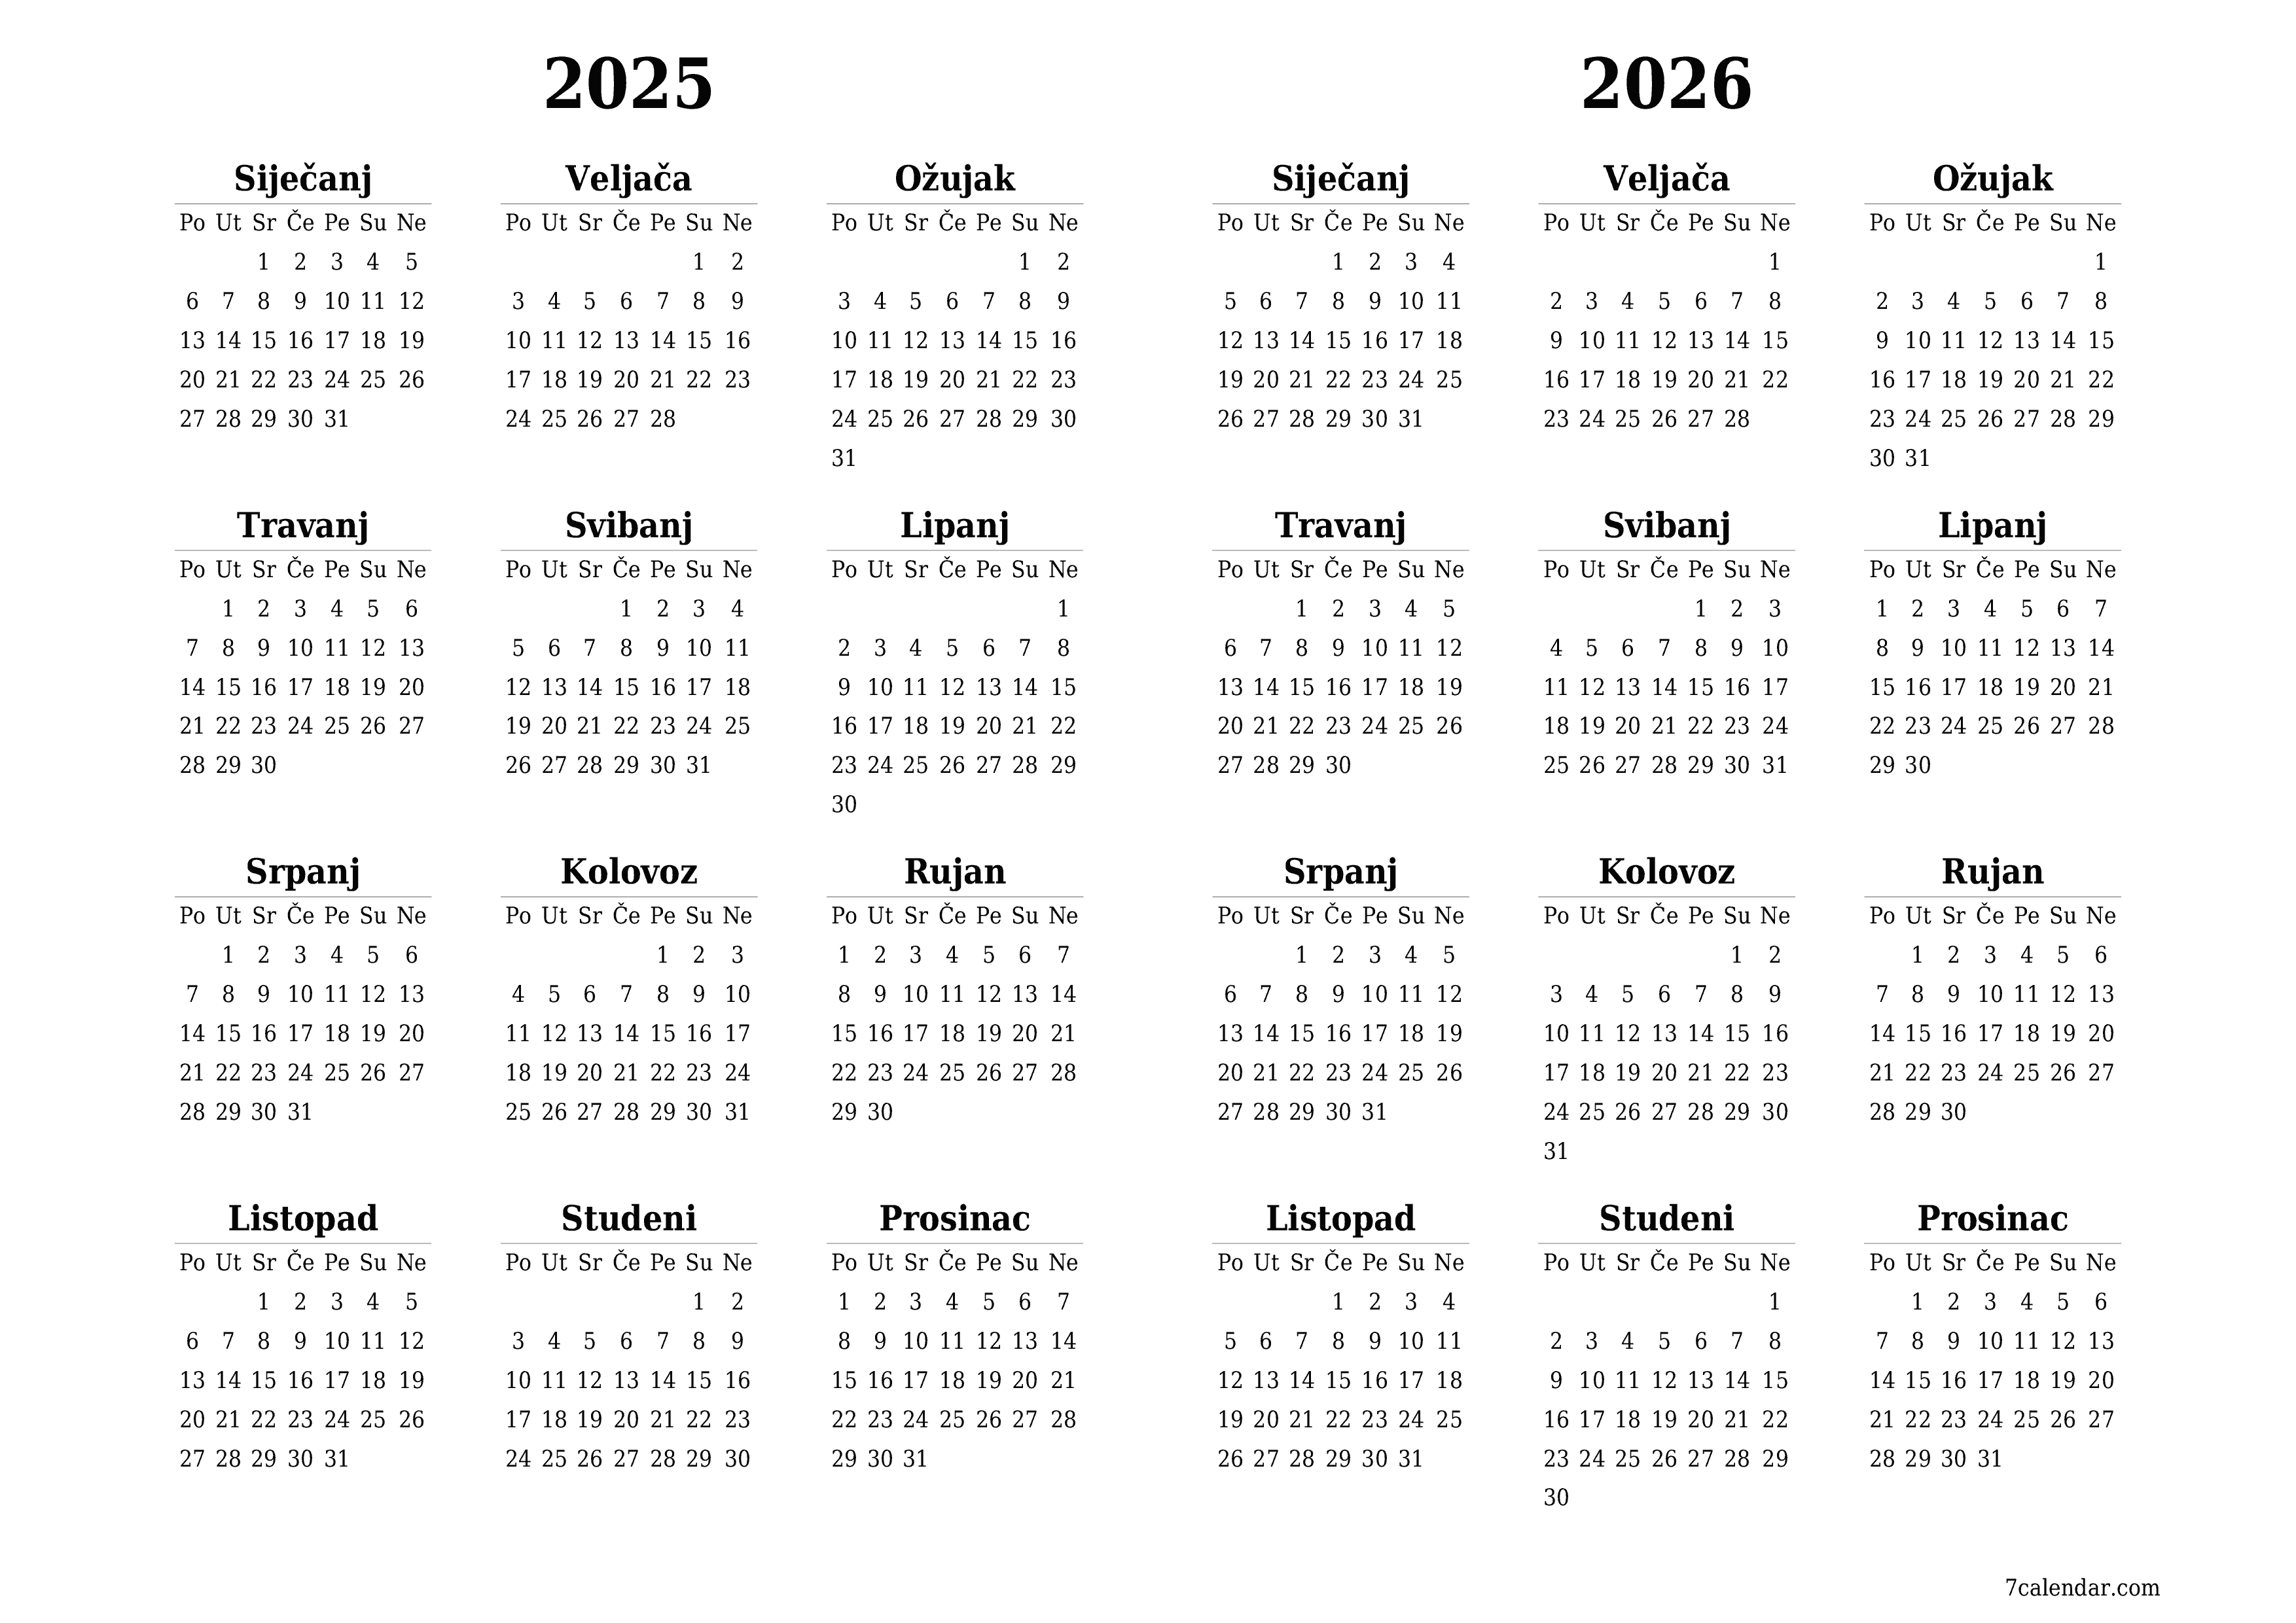  za ispis zidni predložak a besplatni horizontalno Godišnje kalendar Veljača (Vel) 2025